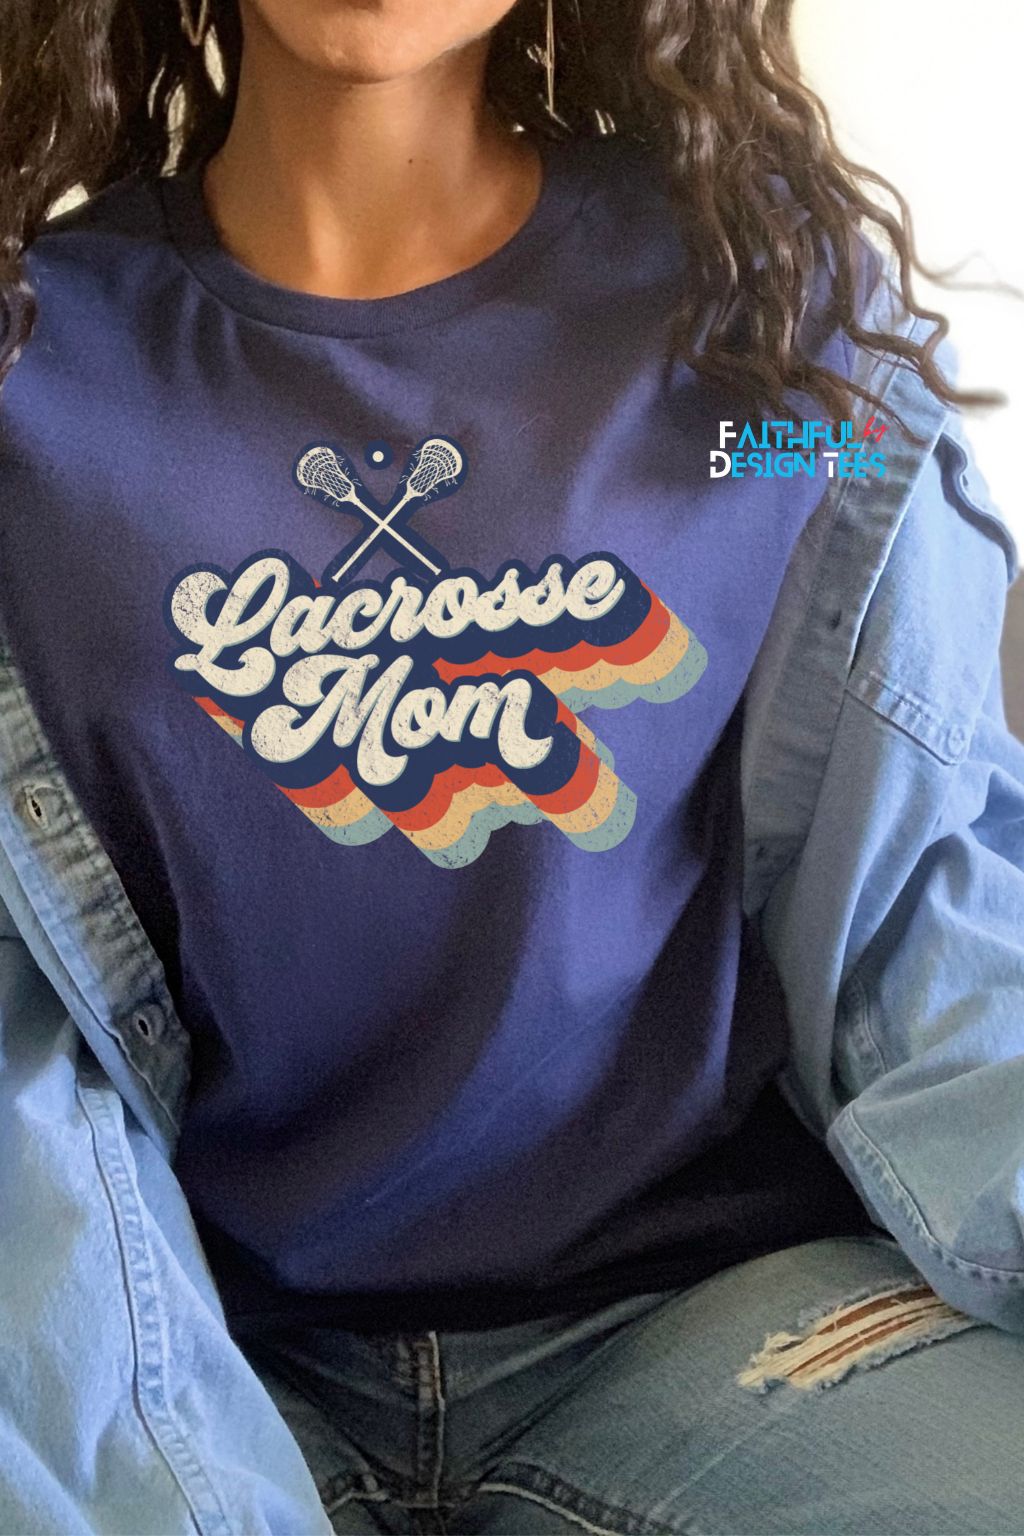 Retro Lacrosse Mom Tee